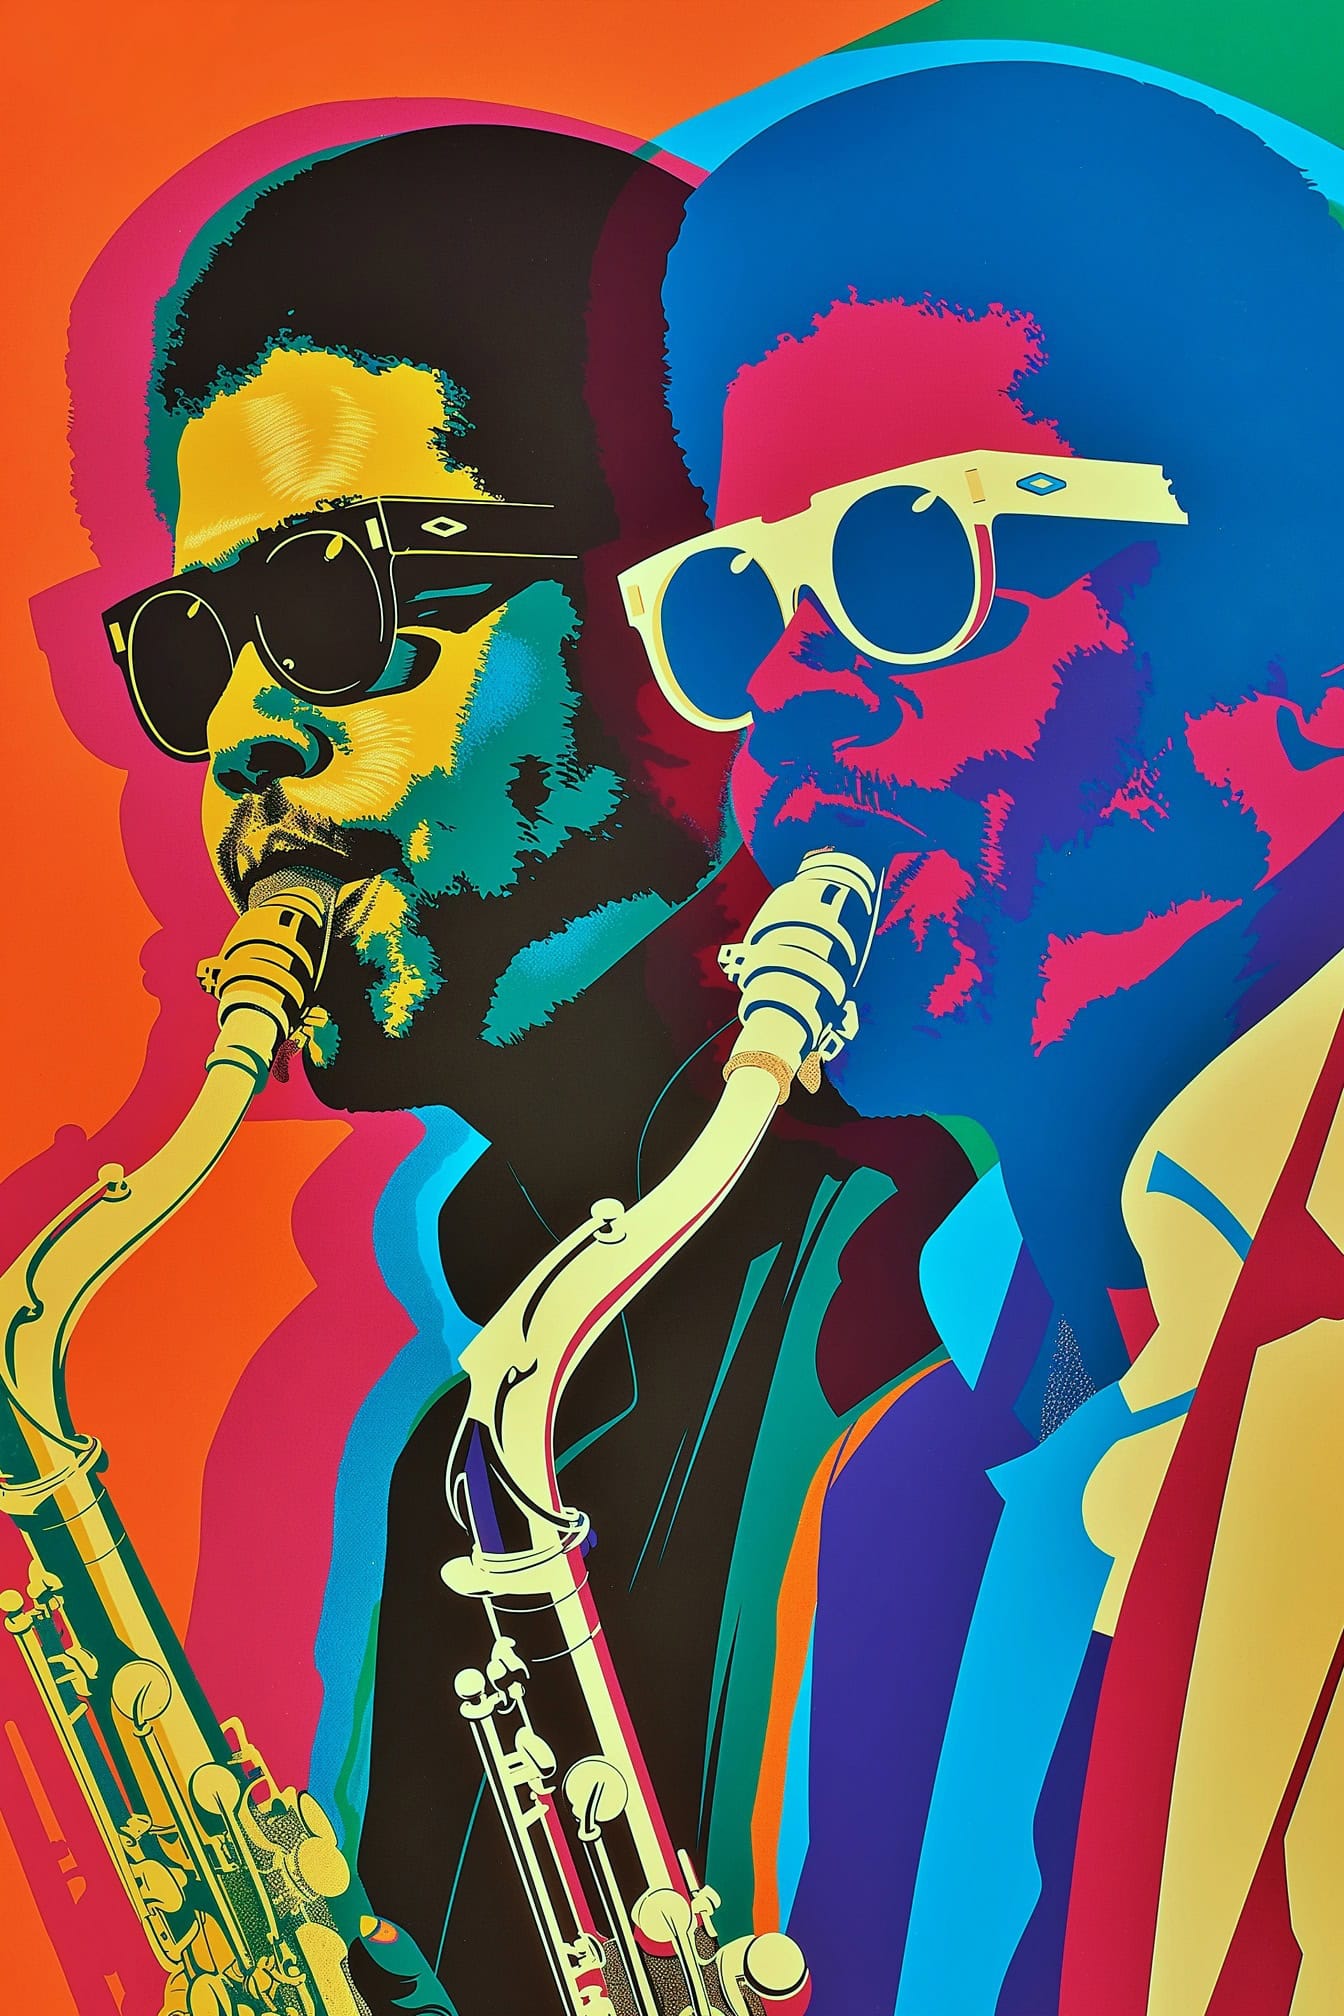 Musisi jazz Afrika-Amerika bermain saksofon, poster dua pria dengan gaya seni pop retro